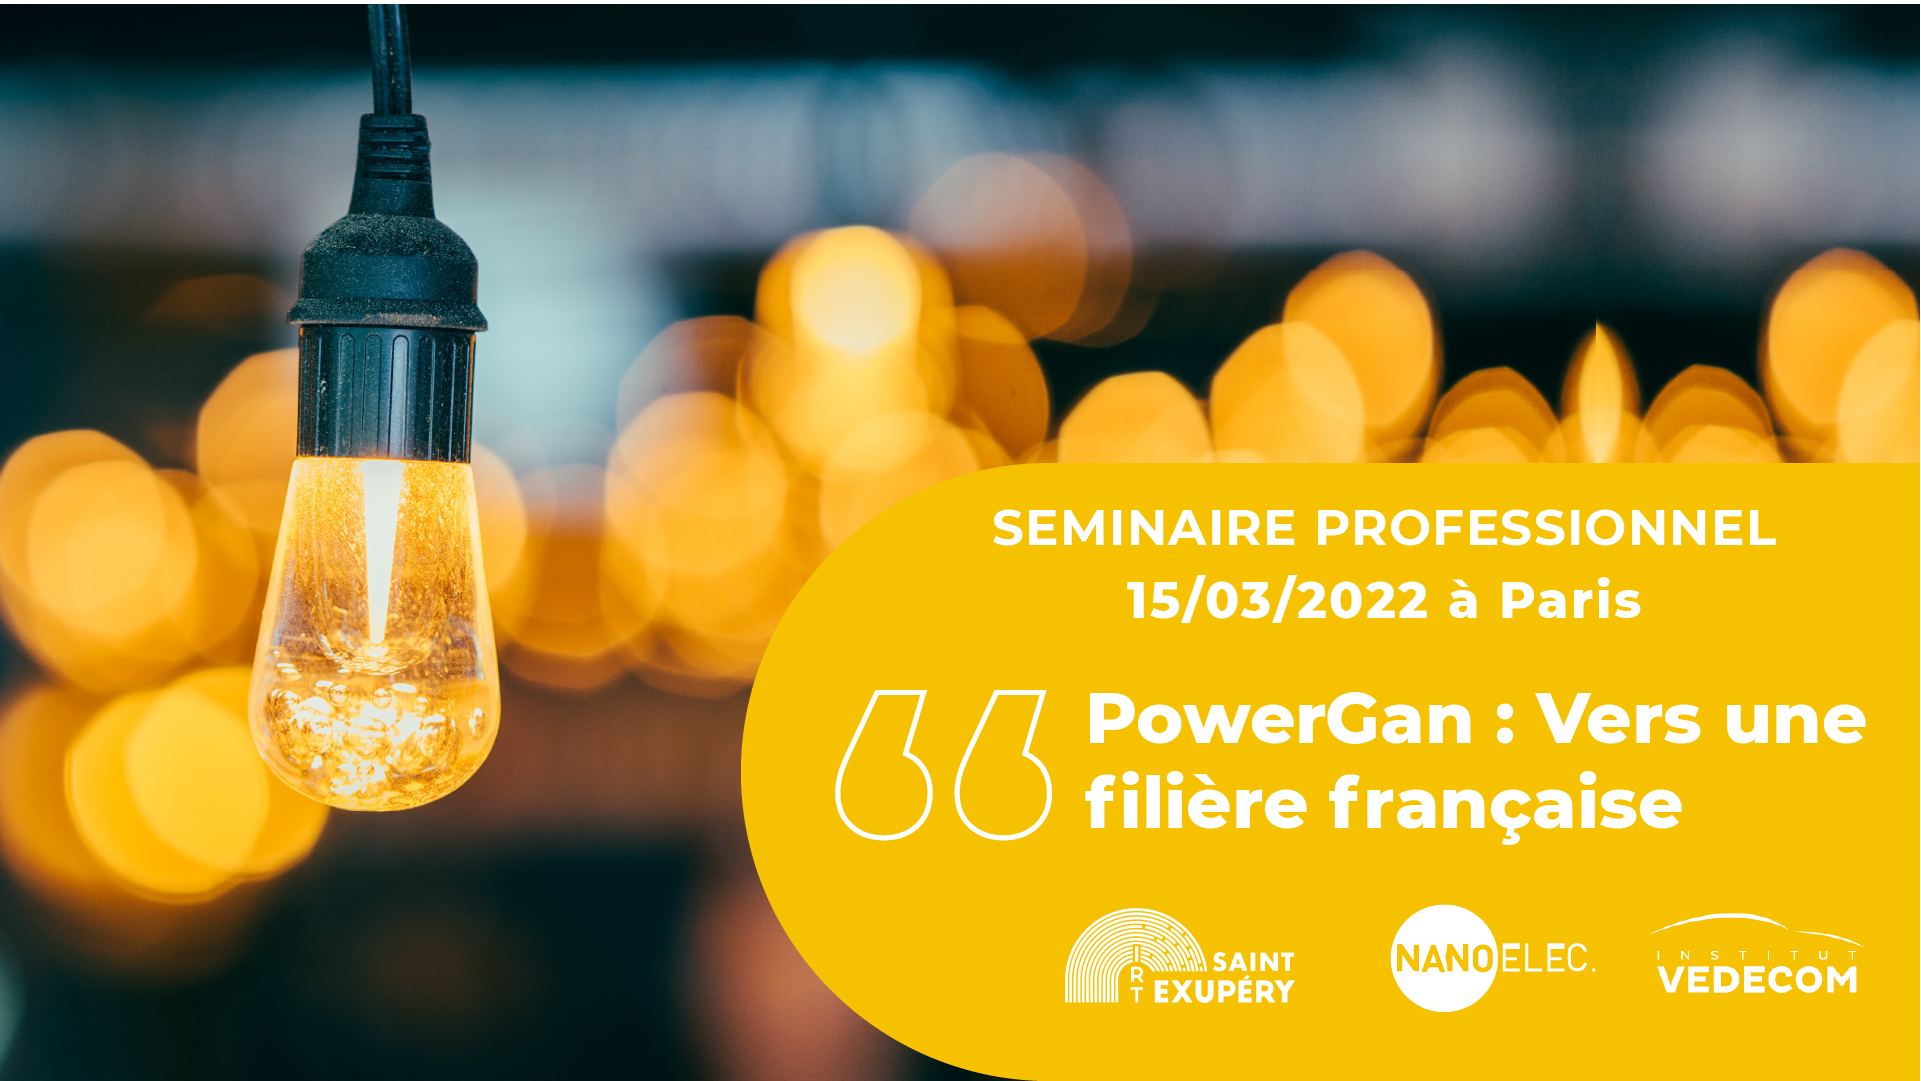 PowerGan : vers une filière française